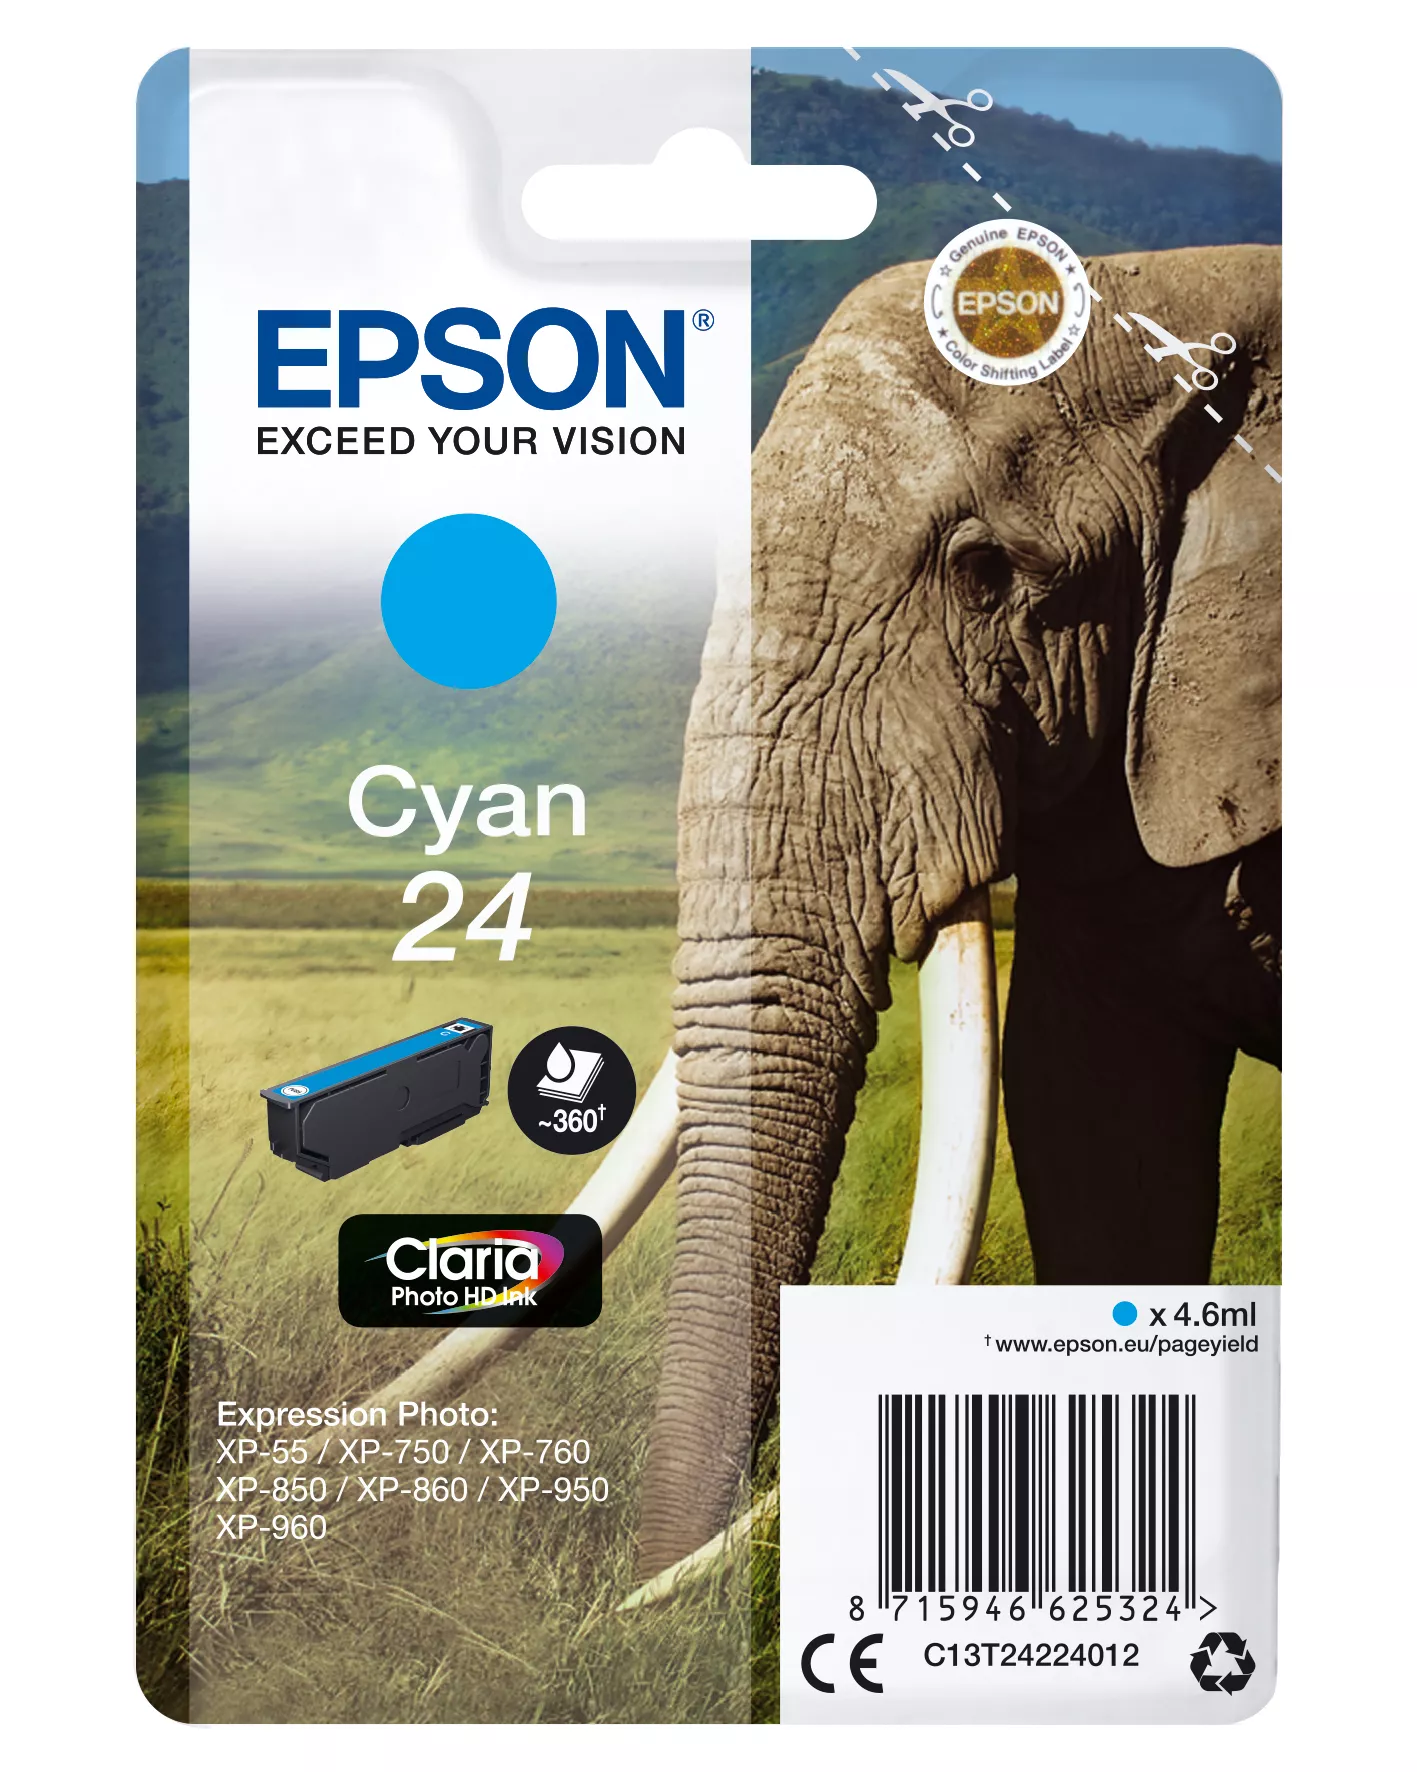 Achat EPSON 24 cartouche d encre cyan capacité standard 4.6ml au meilleur prix